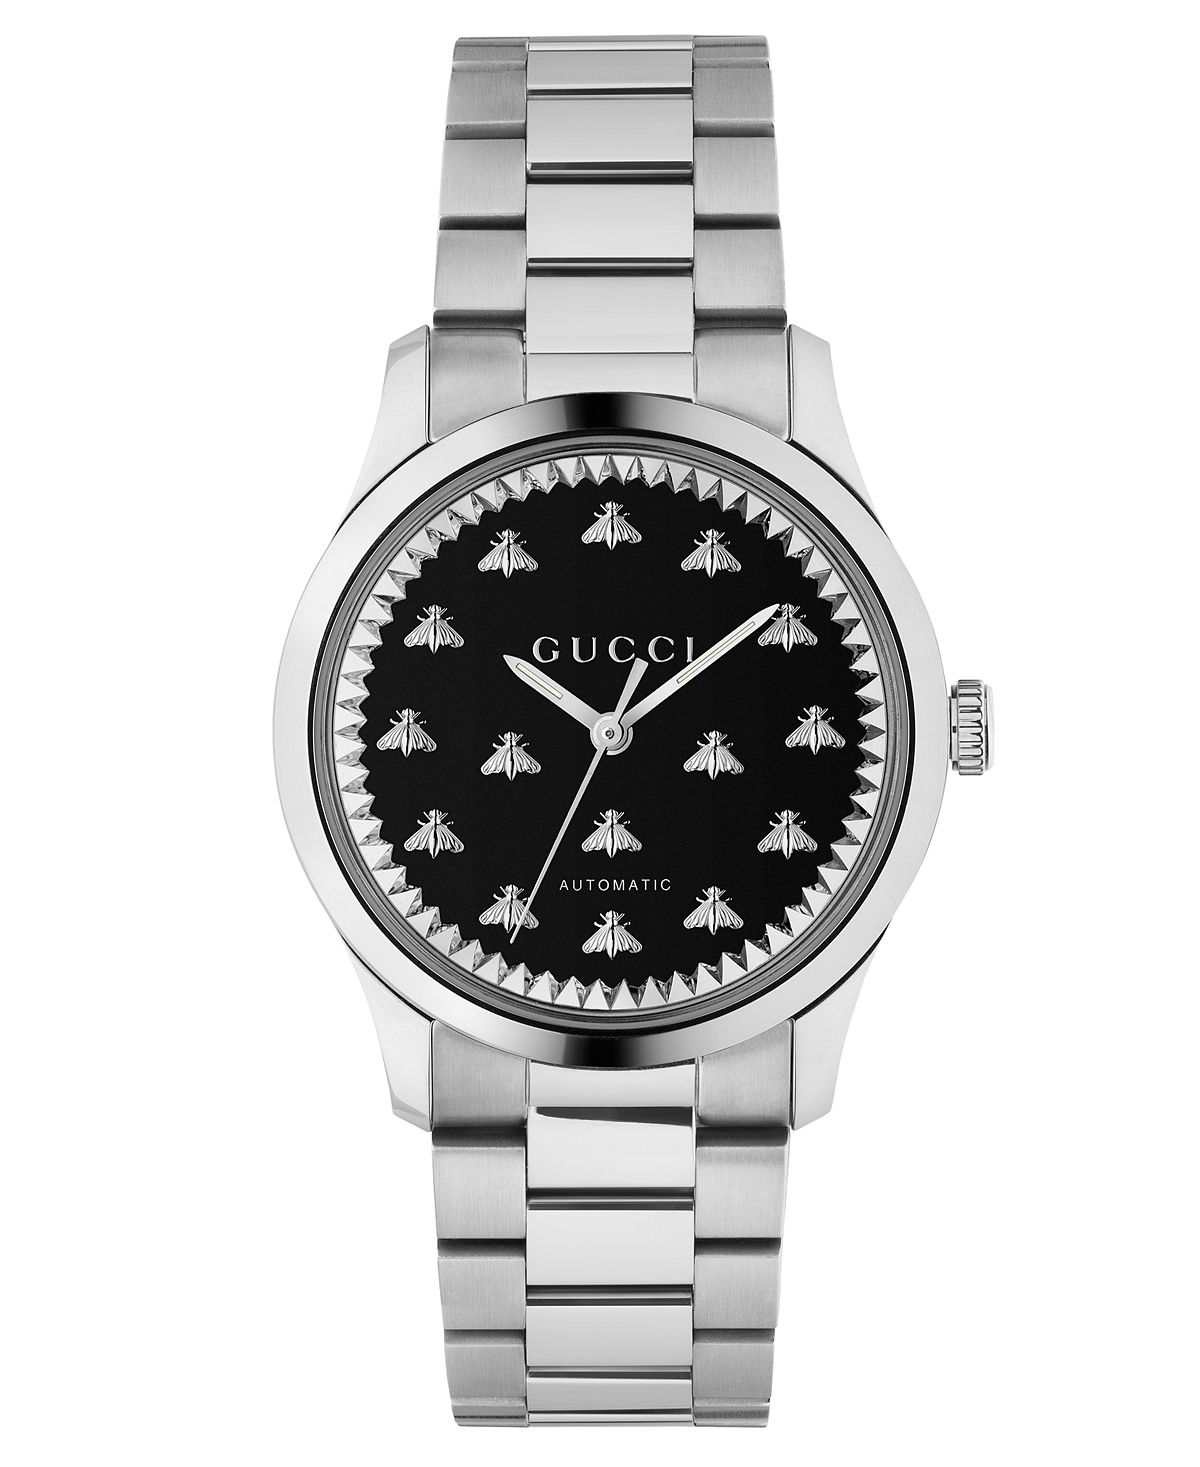 Унисекс Швейцарские автоматические часы с браслетом из нержавеющей стали 38 мм Gucci